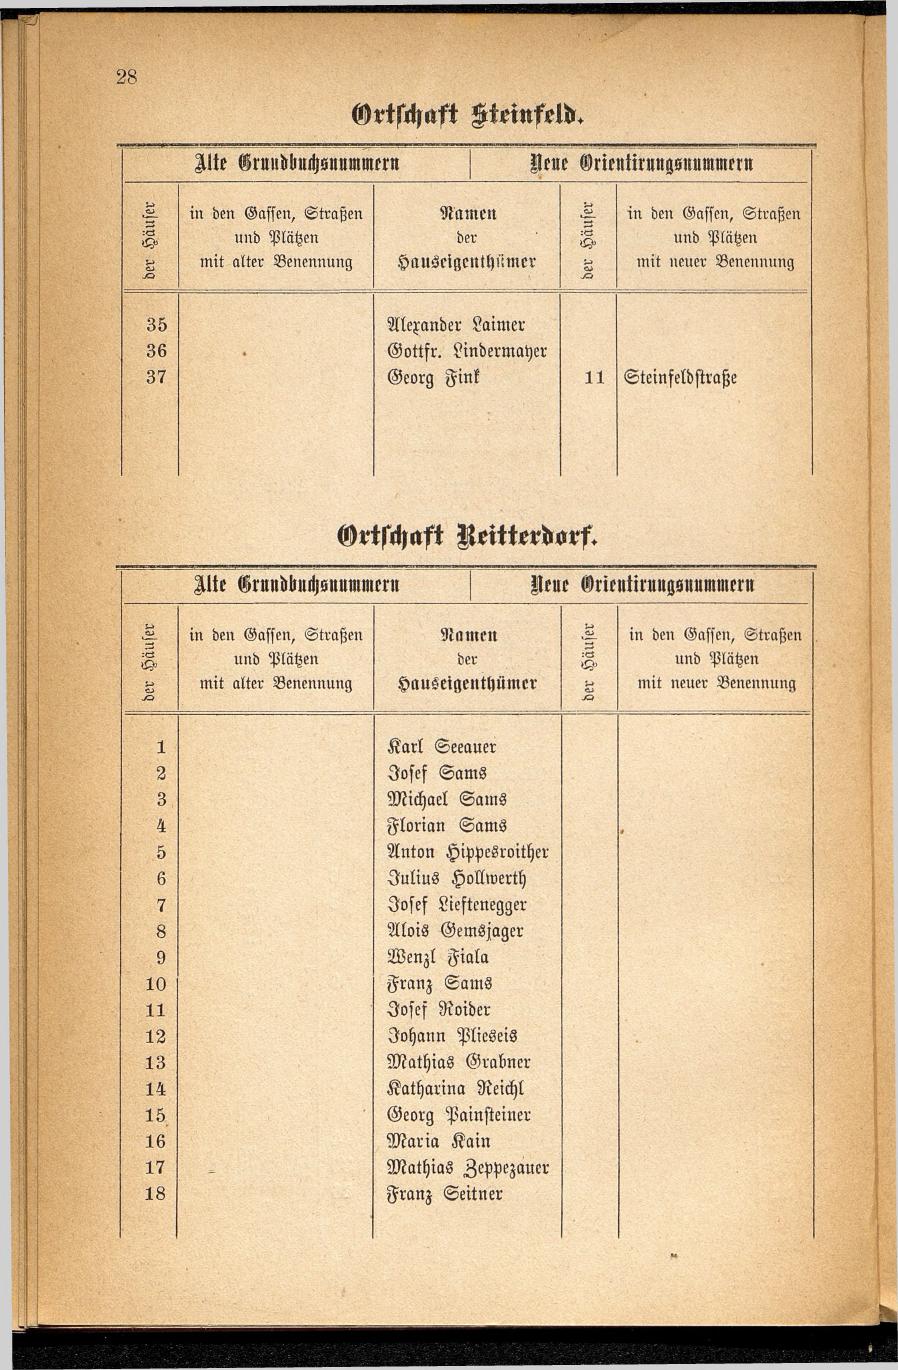 Häuser-Verzeichnis des Marktes und Kurortes Ischl nach den neuen Orientirungsnummern 1881 - Seite 32